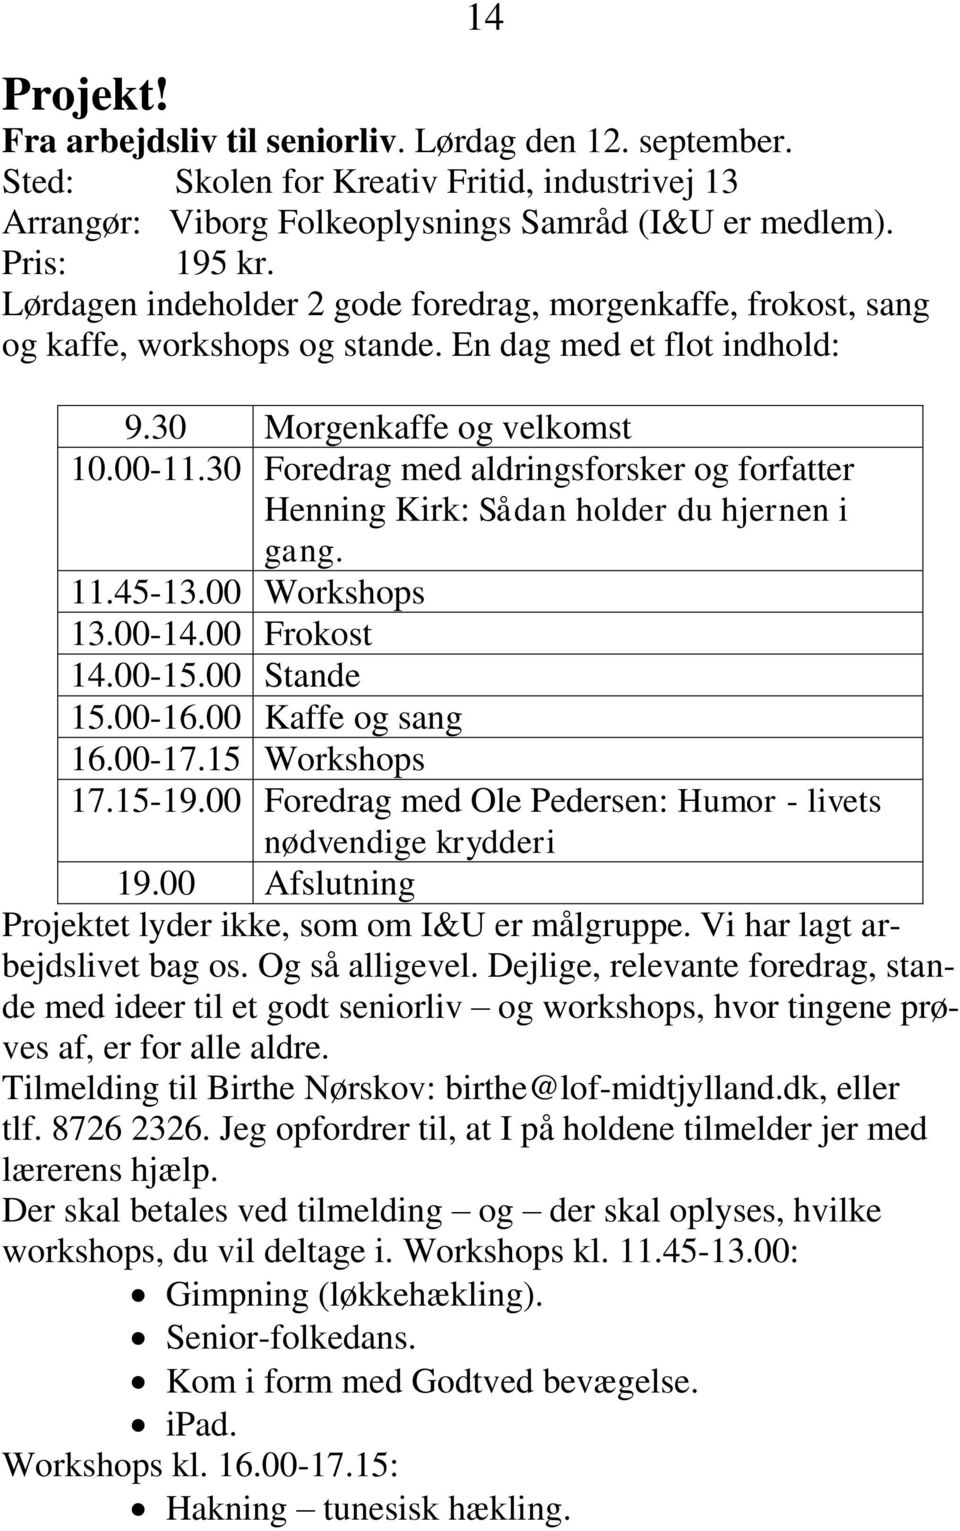 30 Foredrag med aldringsforsker og forfatter Henning Kirk: Sådan holder du hjernen i gang. 11.45-13.00 Workshops 13.00-14.00 Frokost 14.00-15.00 Stande 15.00-16.00 Kaffe og sang 16.00-17.